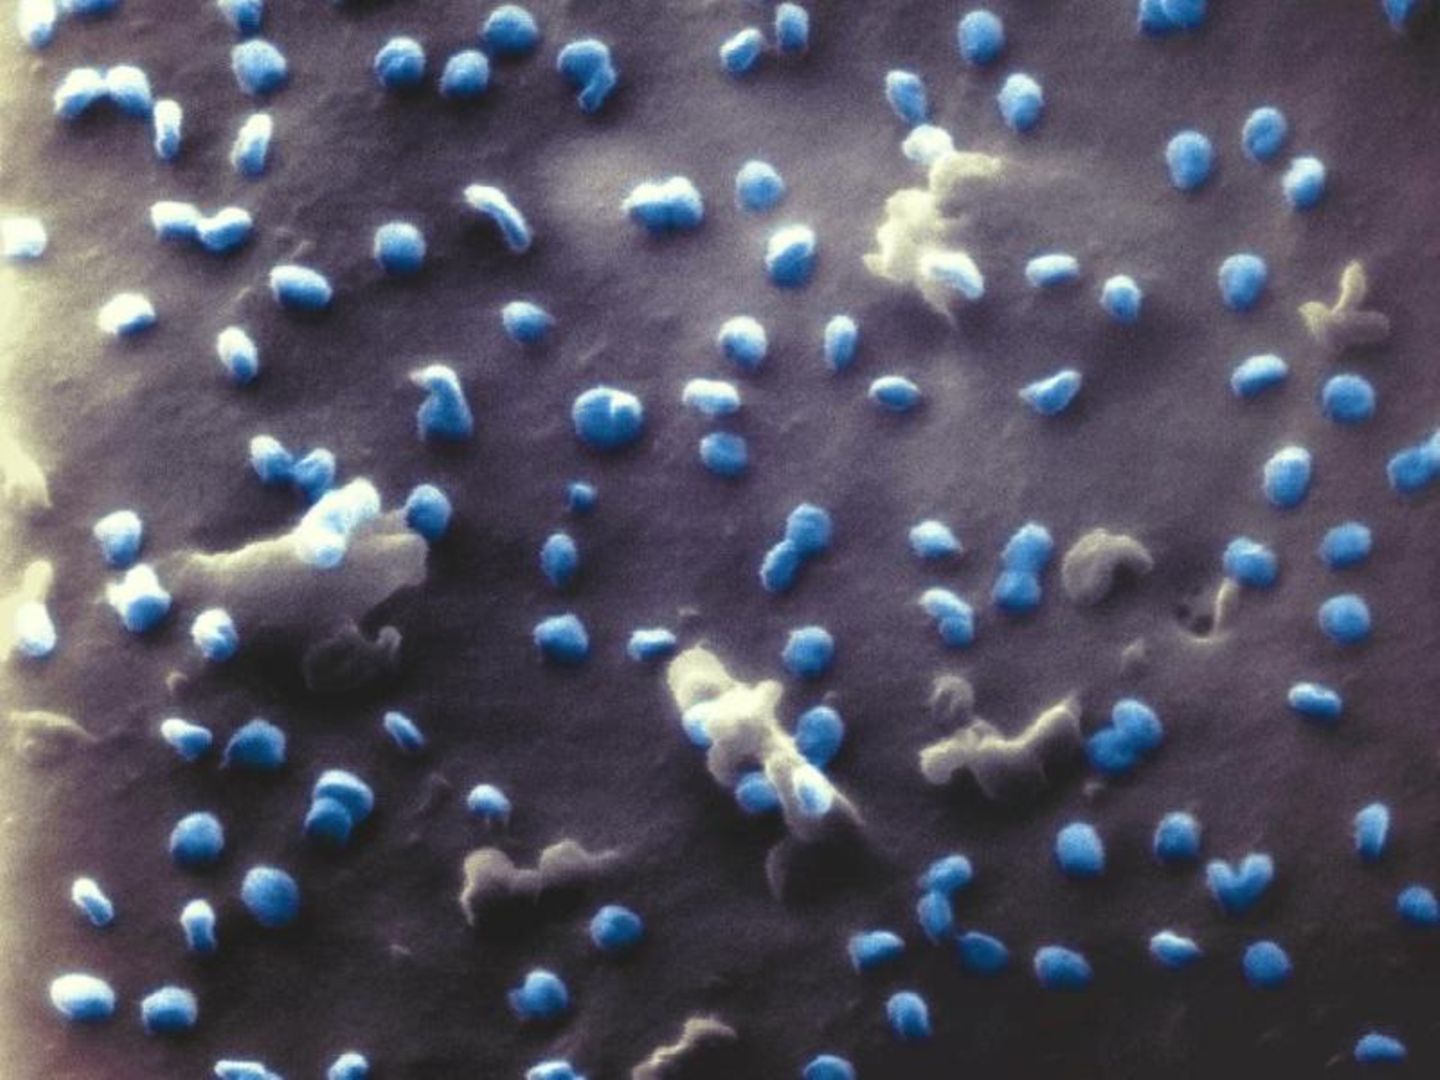 Coronaviren unter dem Mikroskop